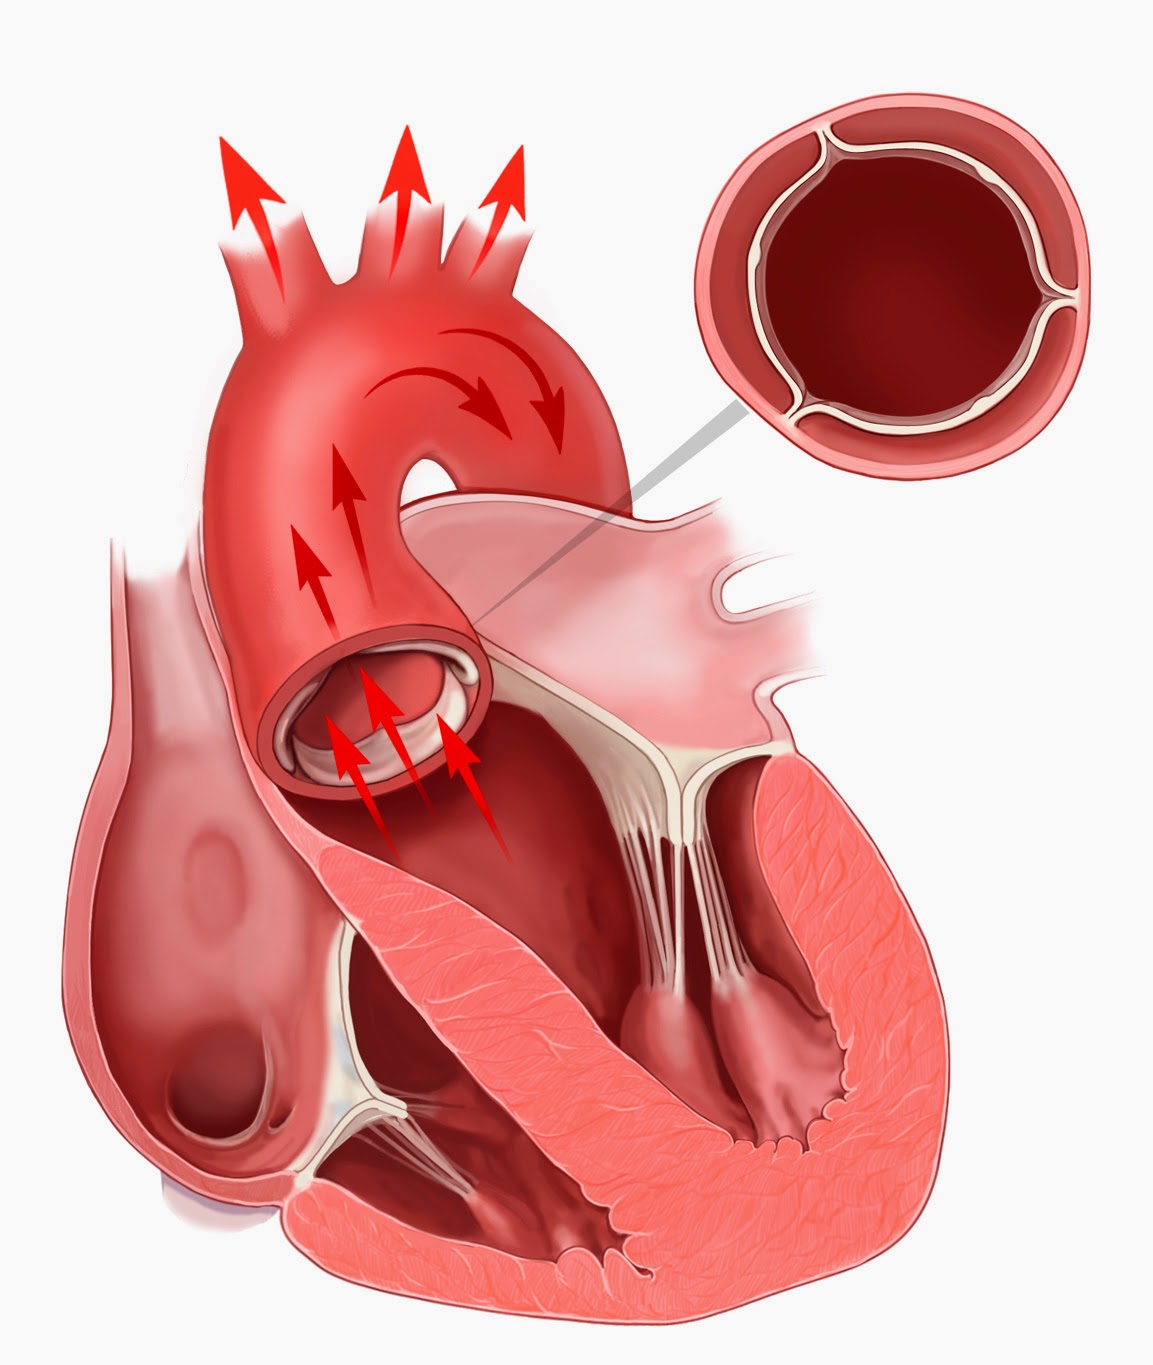 Аортальный стеноз что это такое. Метоальгыц аортальный клапаны. Стеноз митрального и аортального клапана. Порок сердца стеноз аортального клапана. Аортальный клапан сердца.